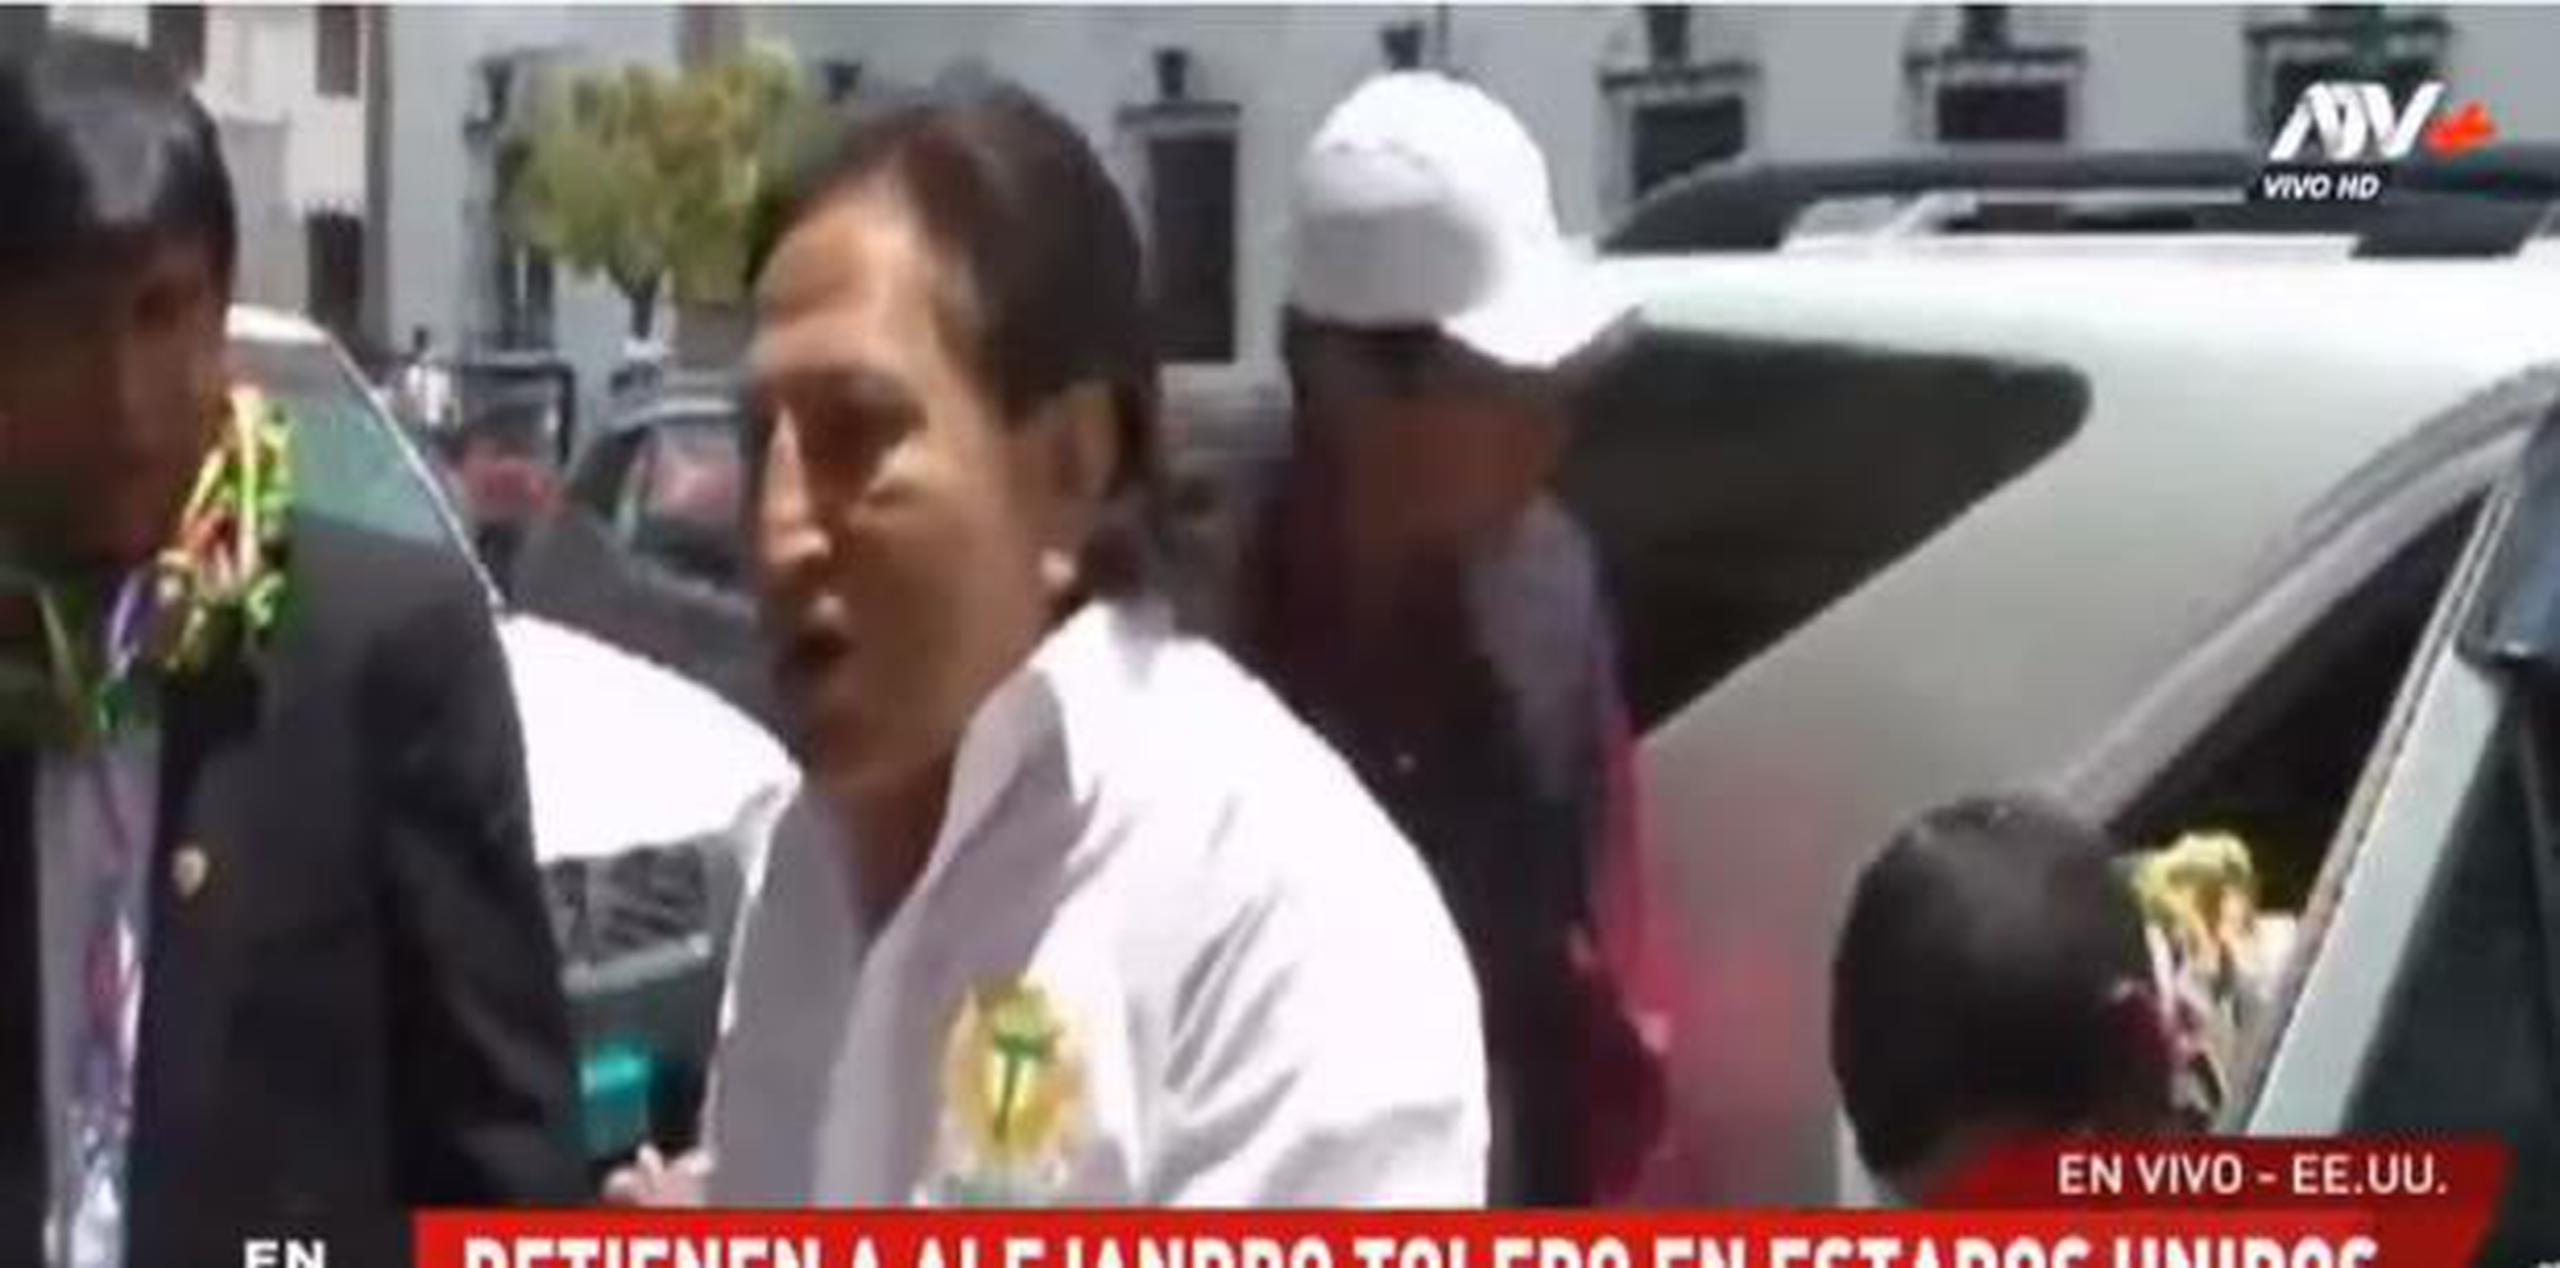 Toledo, de 72 años, está pedido en extradición por la justicia de Perú. (Captura)